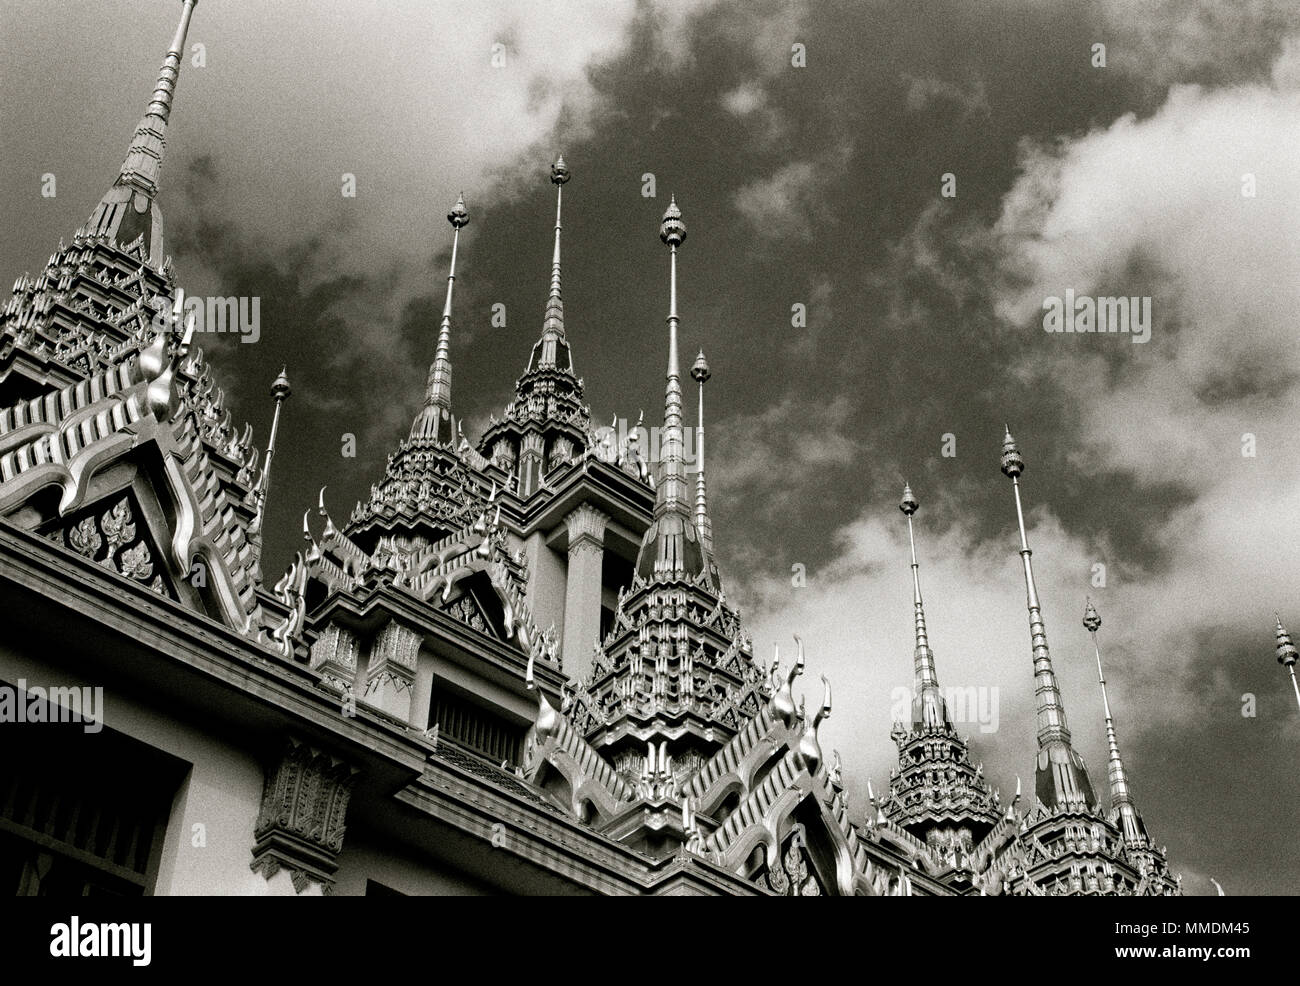 Les clochers de la Buddhist Temple Loha Prasat Metal Château de Wat Ratchanadda à Bangkok en Thaïlande en Asie du Sud-Est Extrême-Orient. Billet Wanderlust B&W Banque D'Images